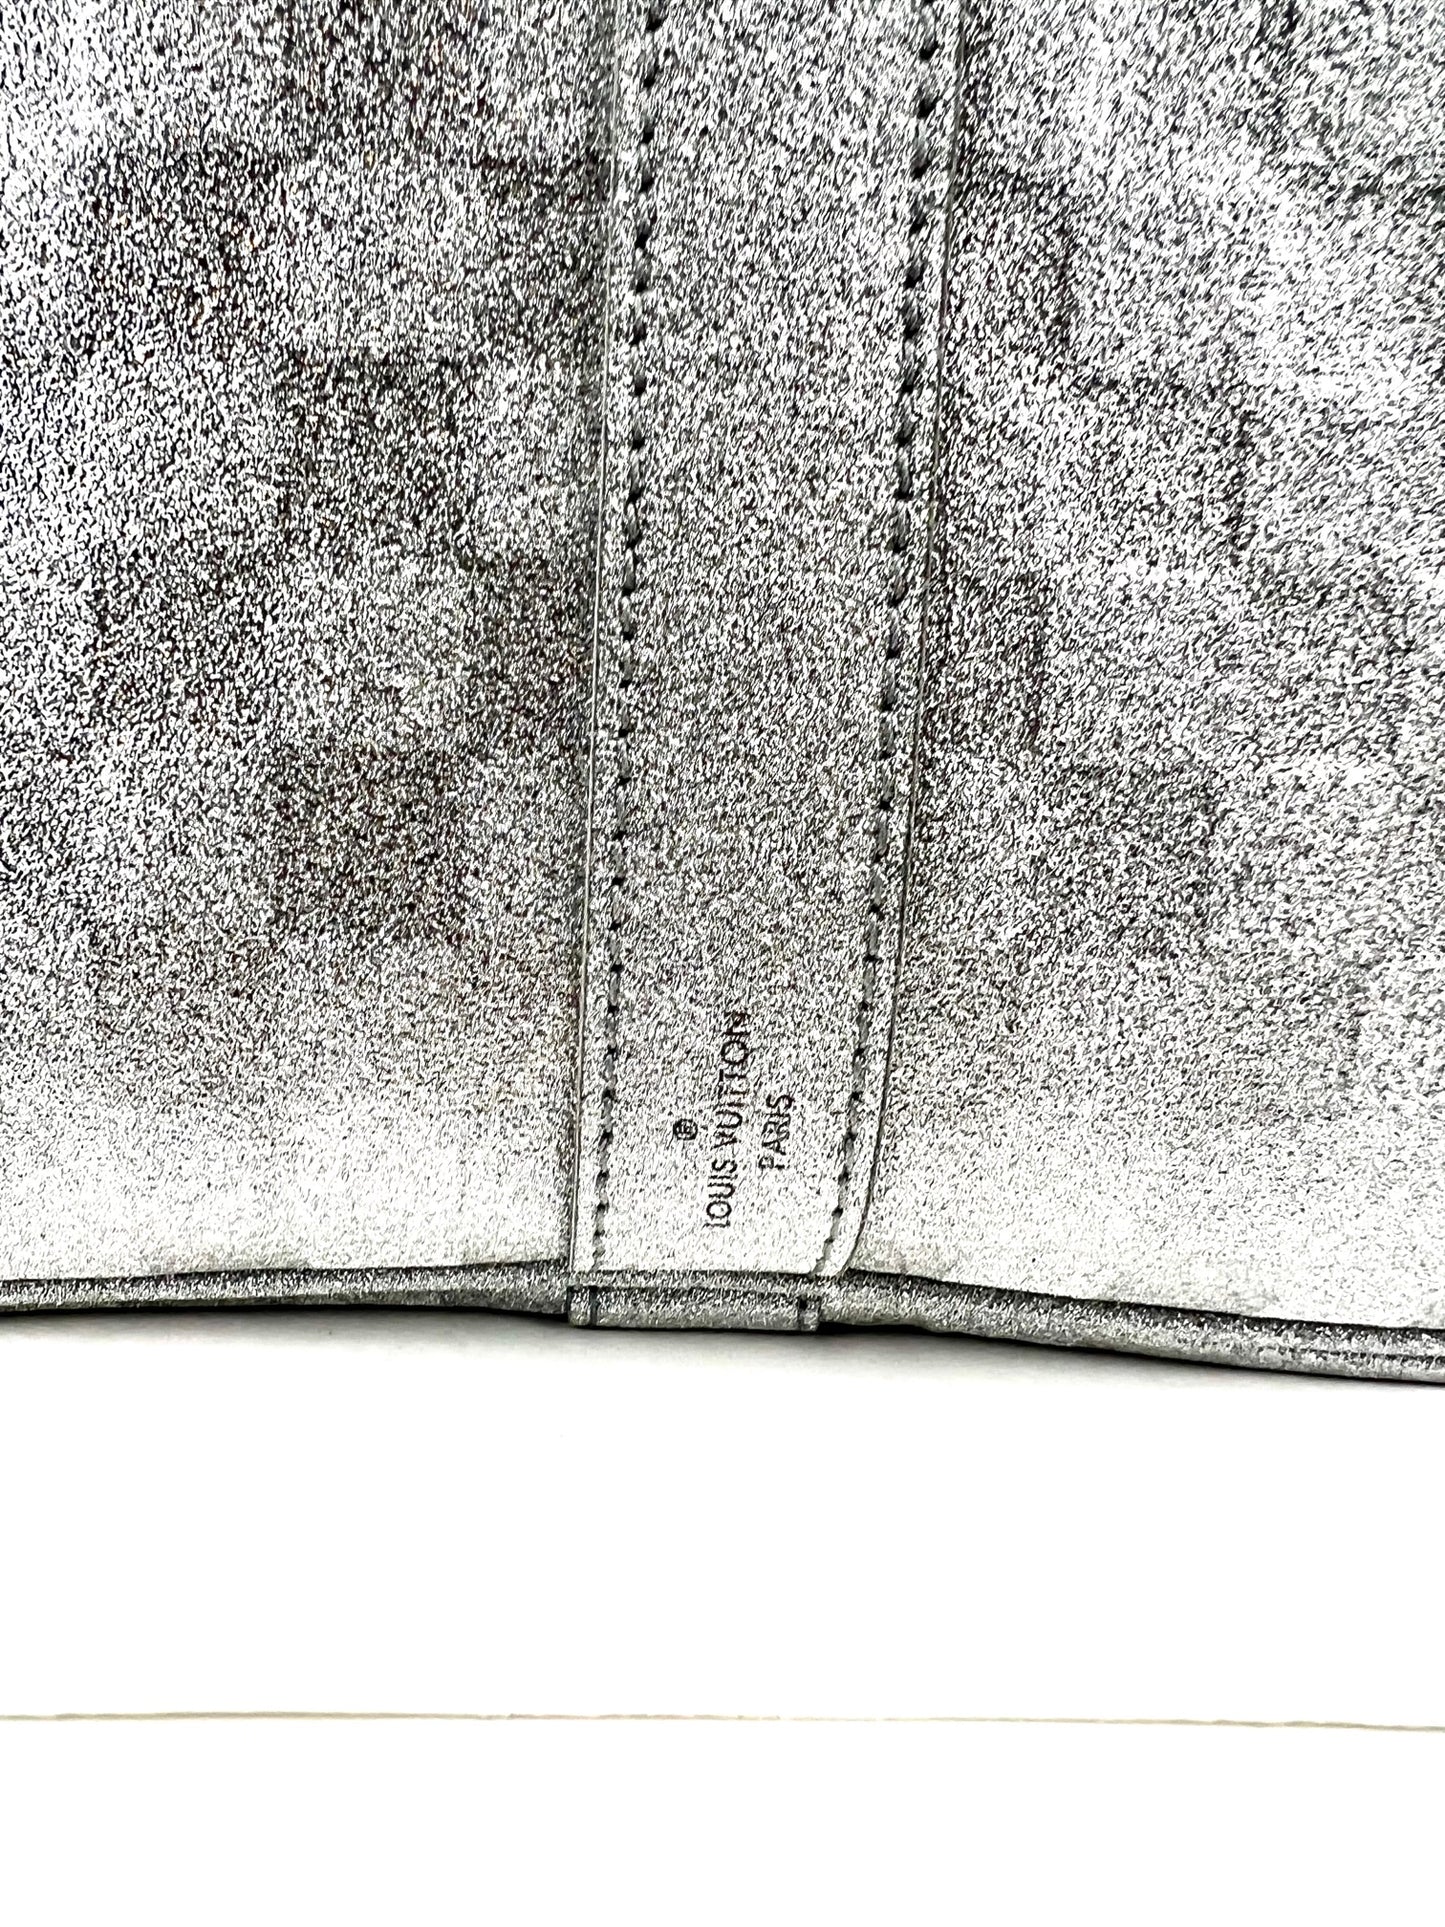 Keepall glitter travel bag Louis Vuitton Silver in Glitter - 30548692